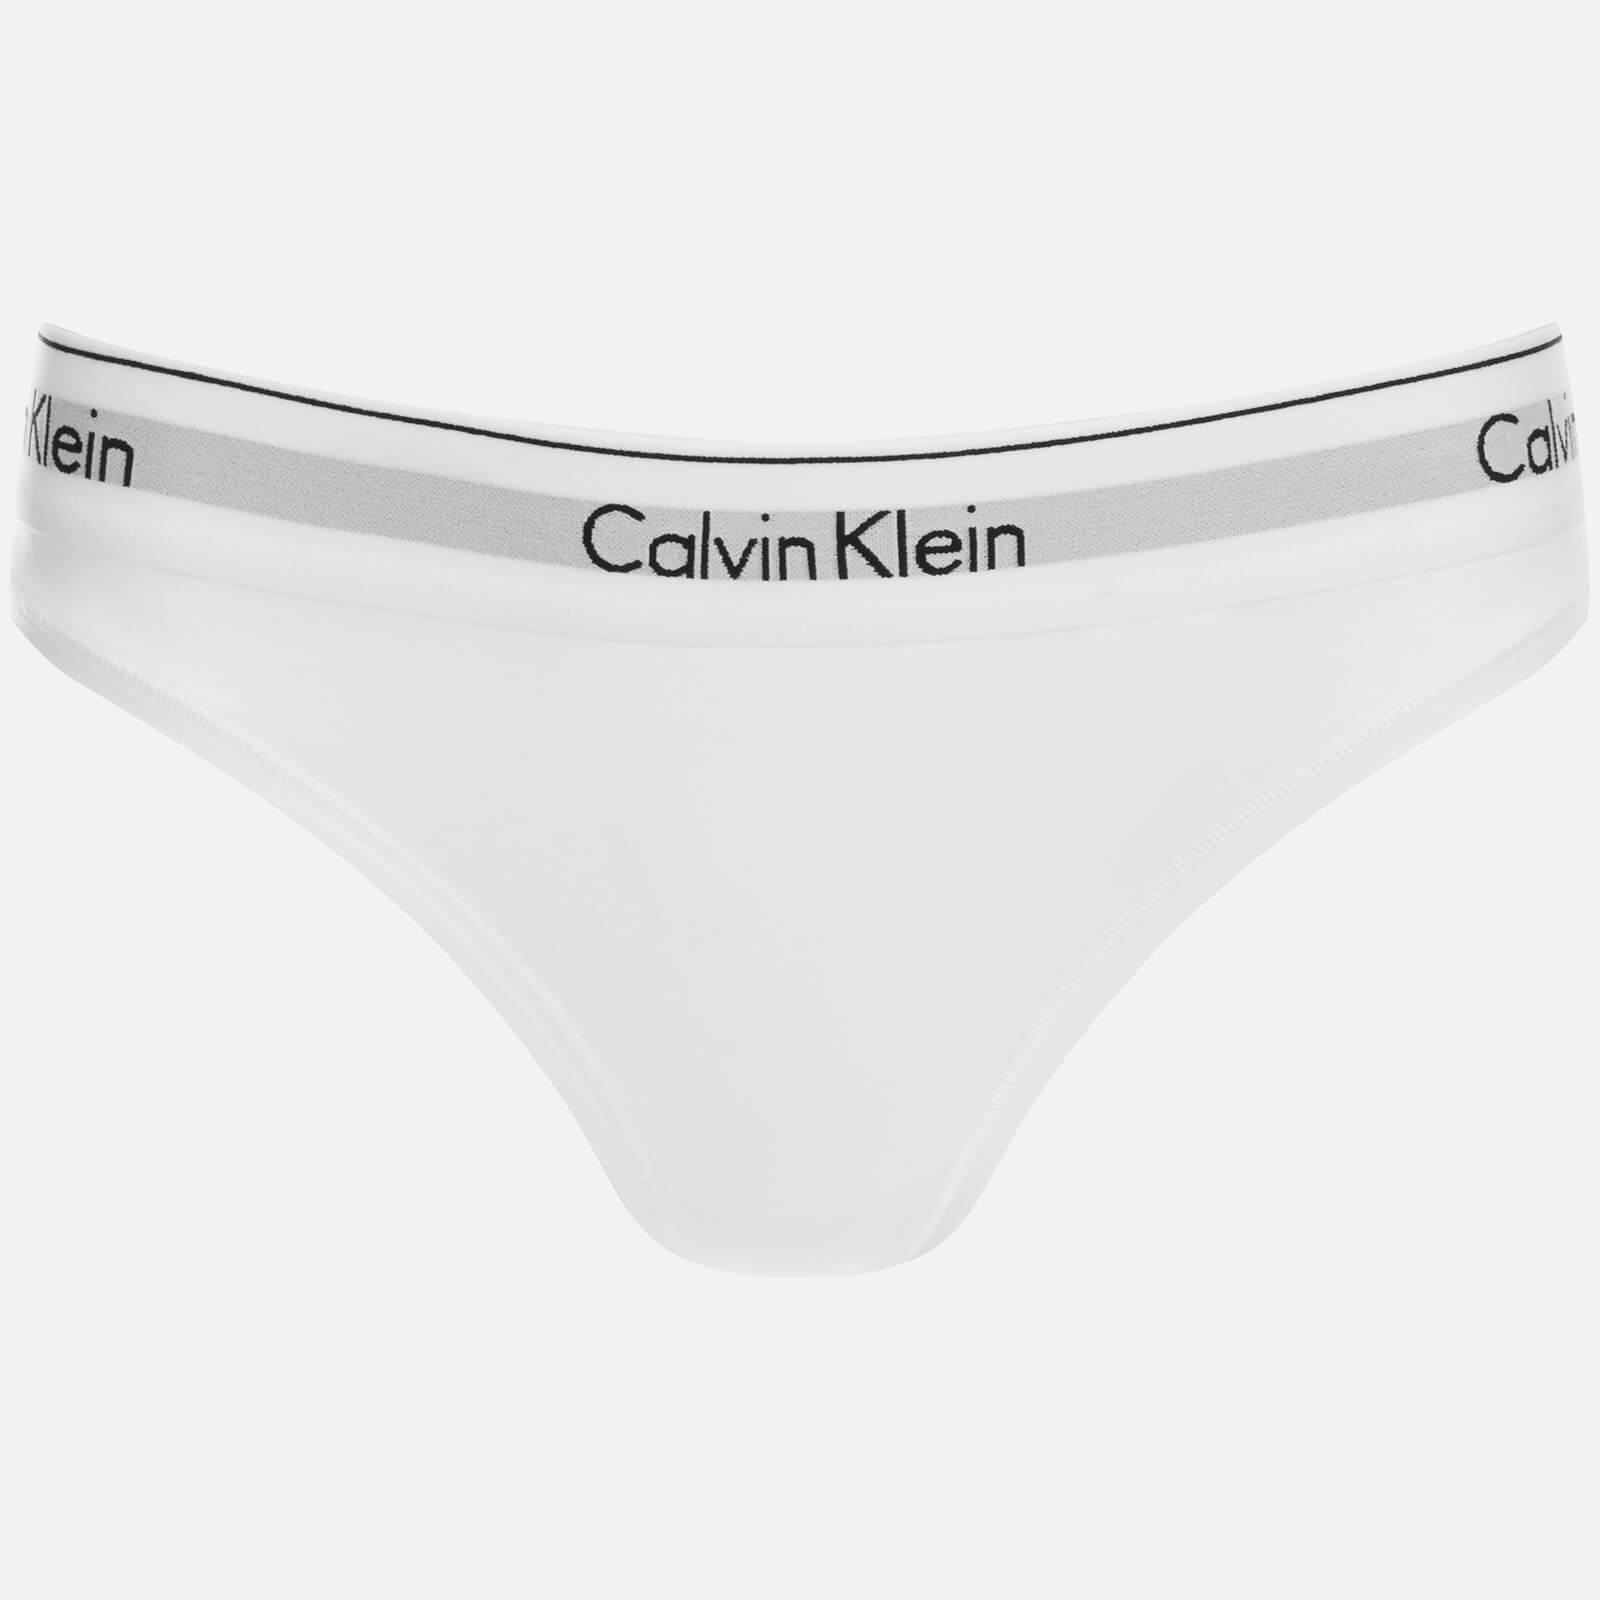 calvin klein ladies thong underwear